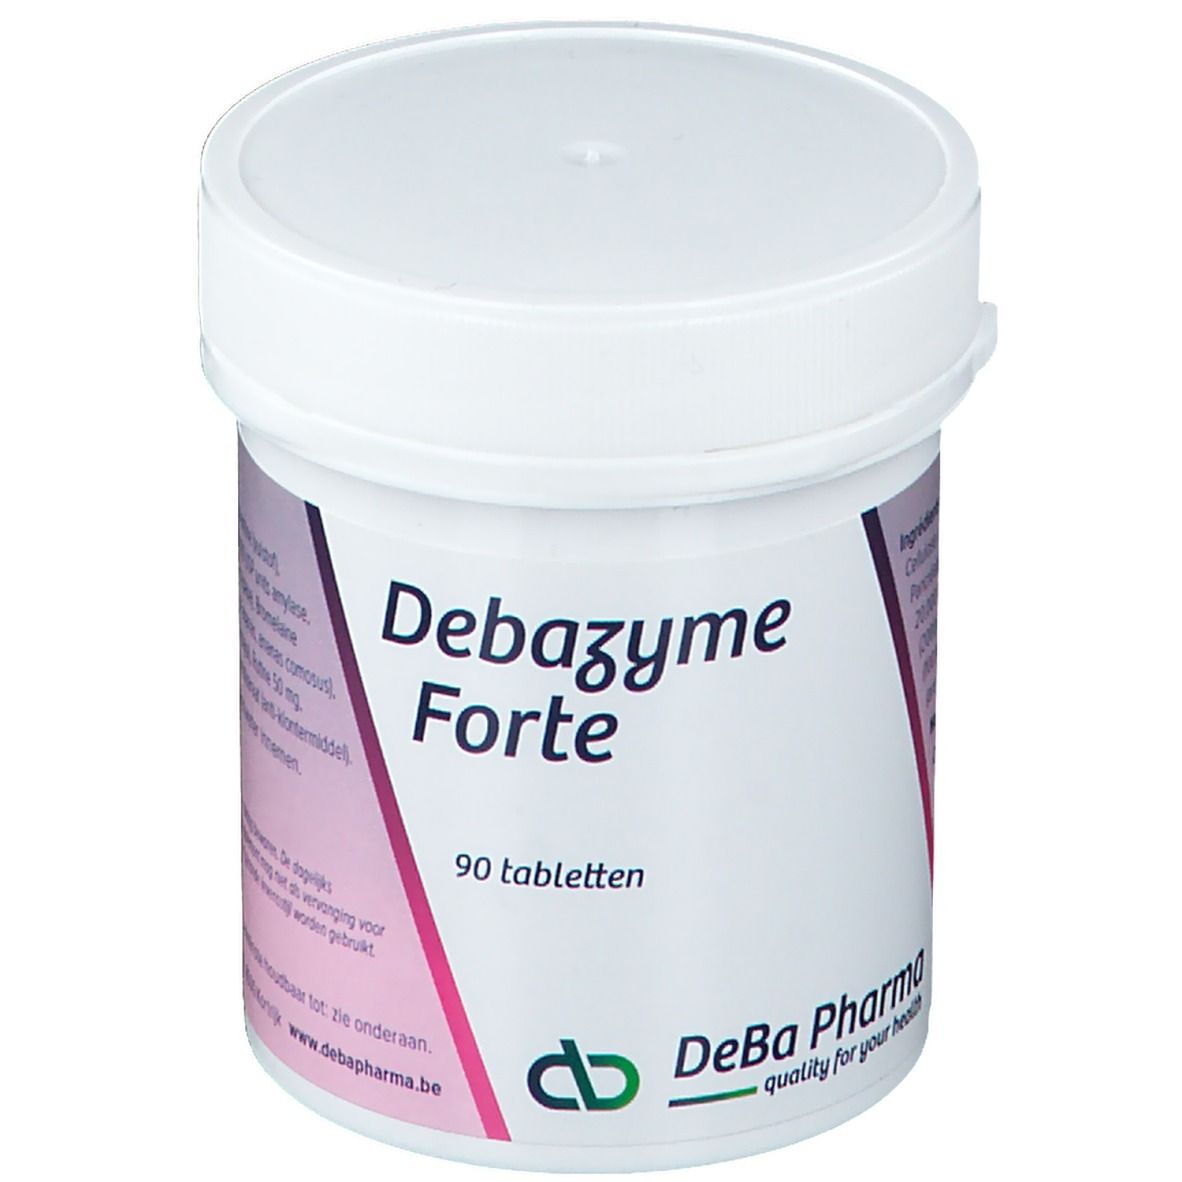 Deba-Zyme Forte